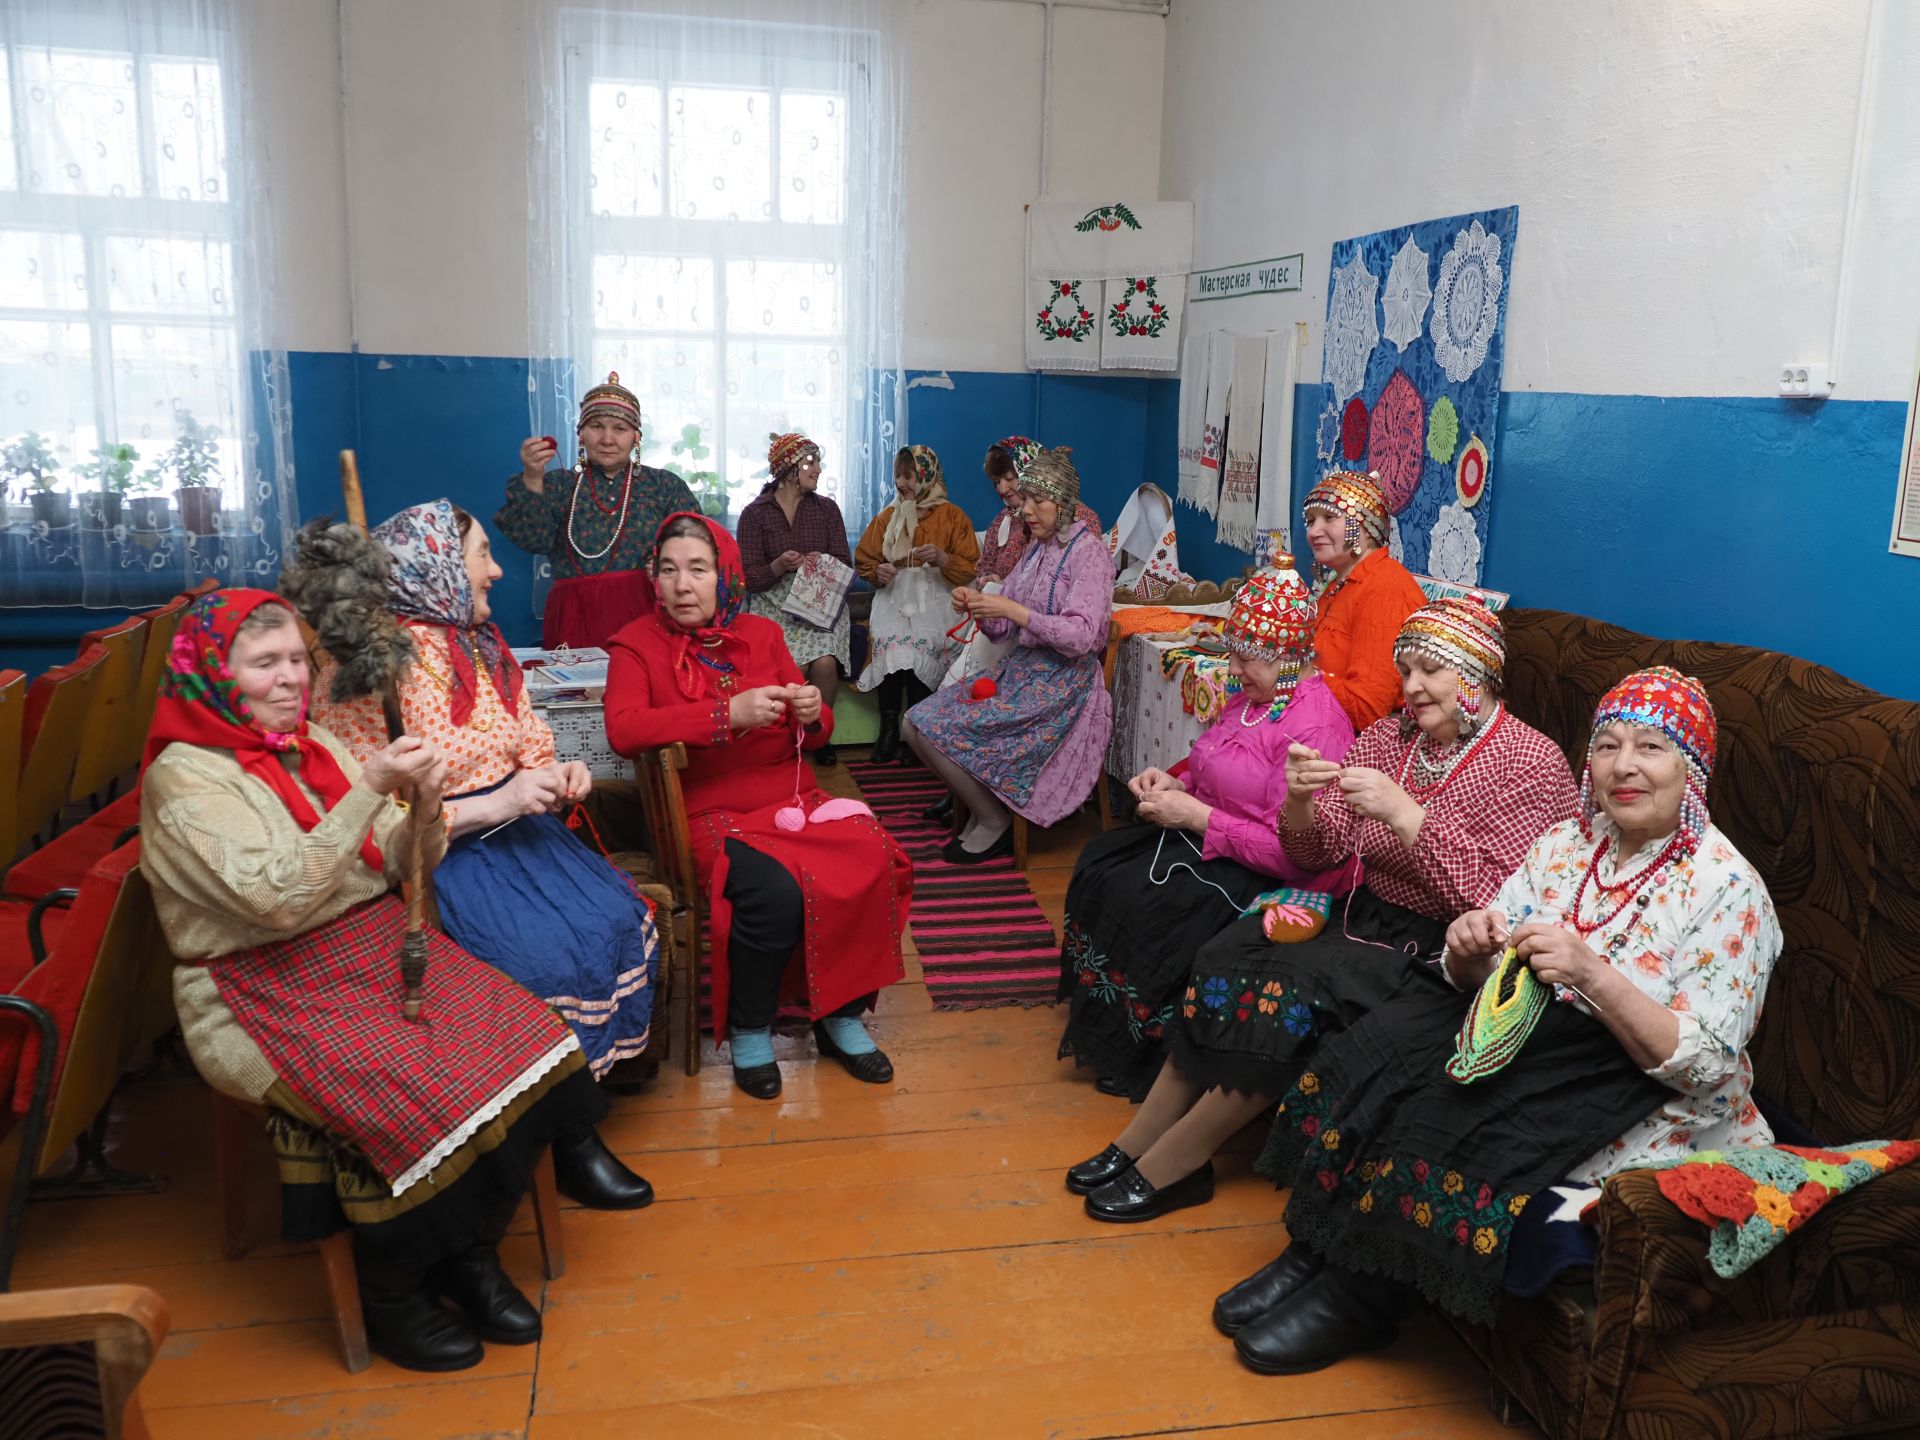 В Андреевском СДК  были проведены посиделки  чувашской культуры.